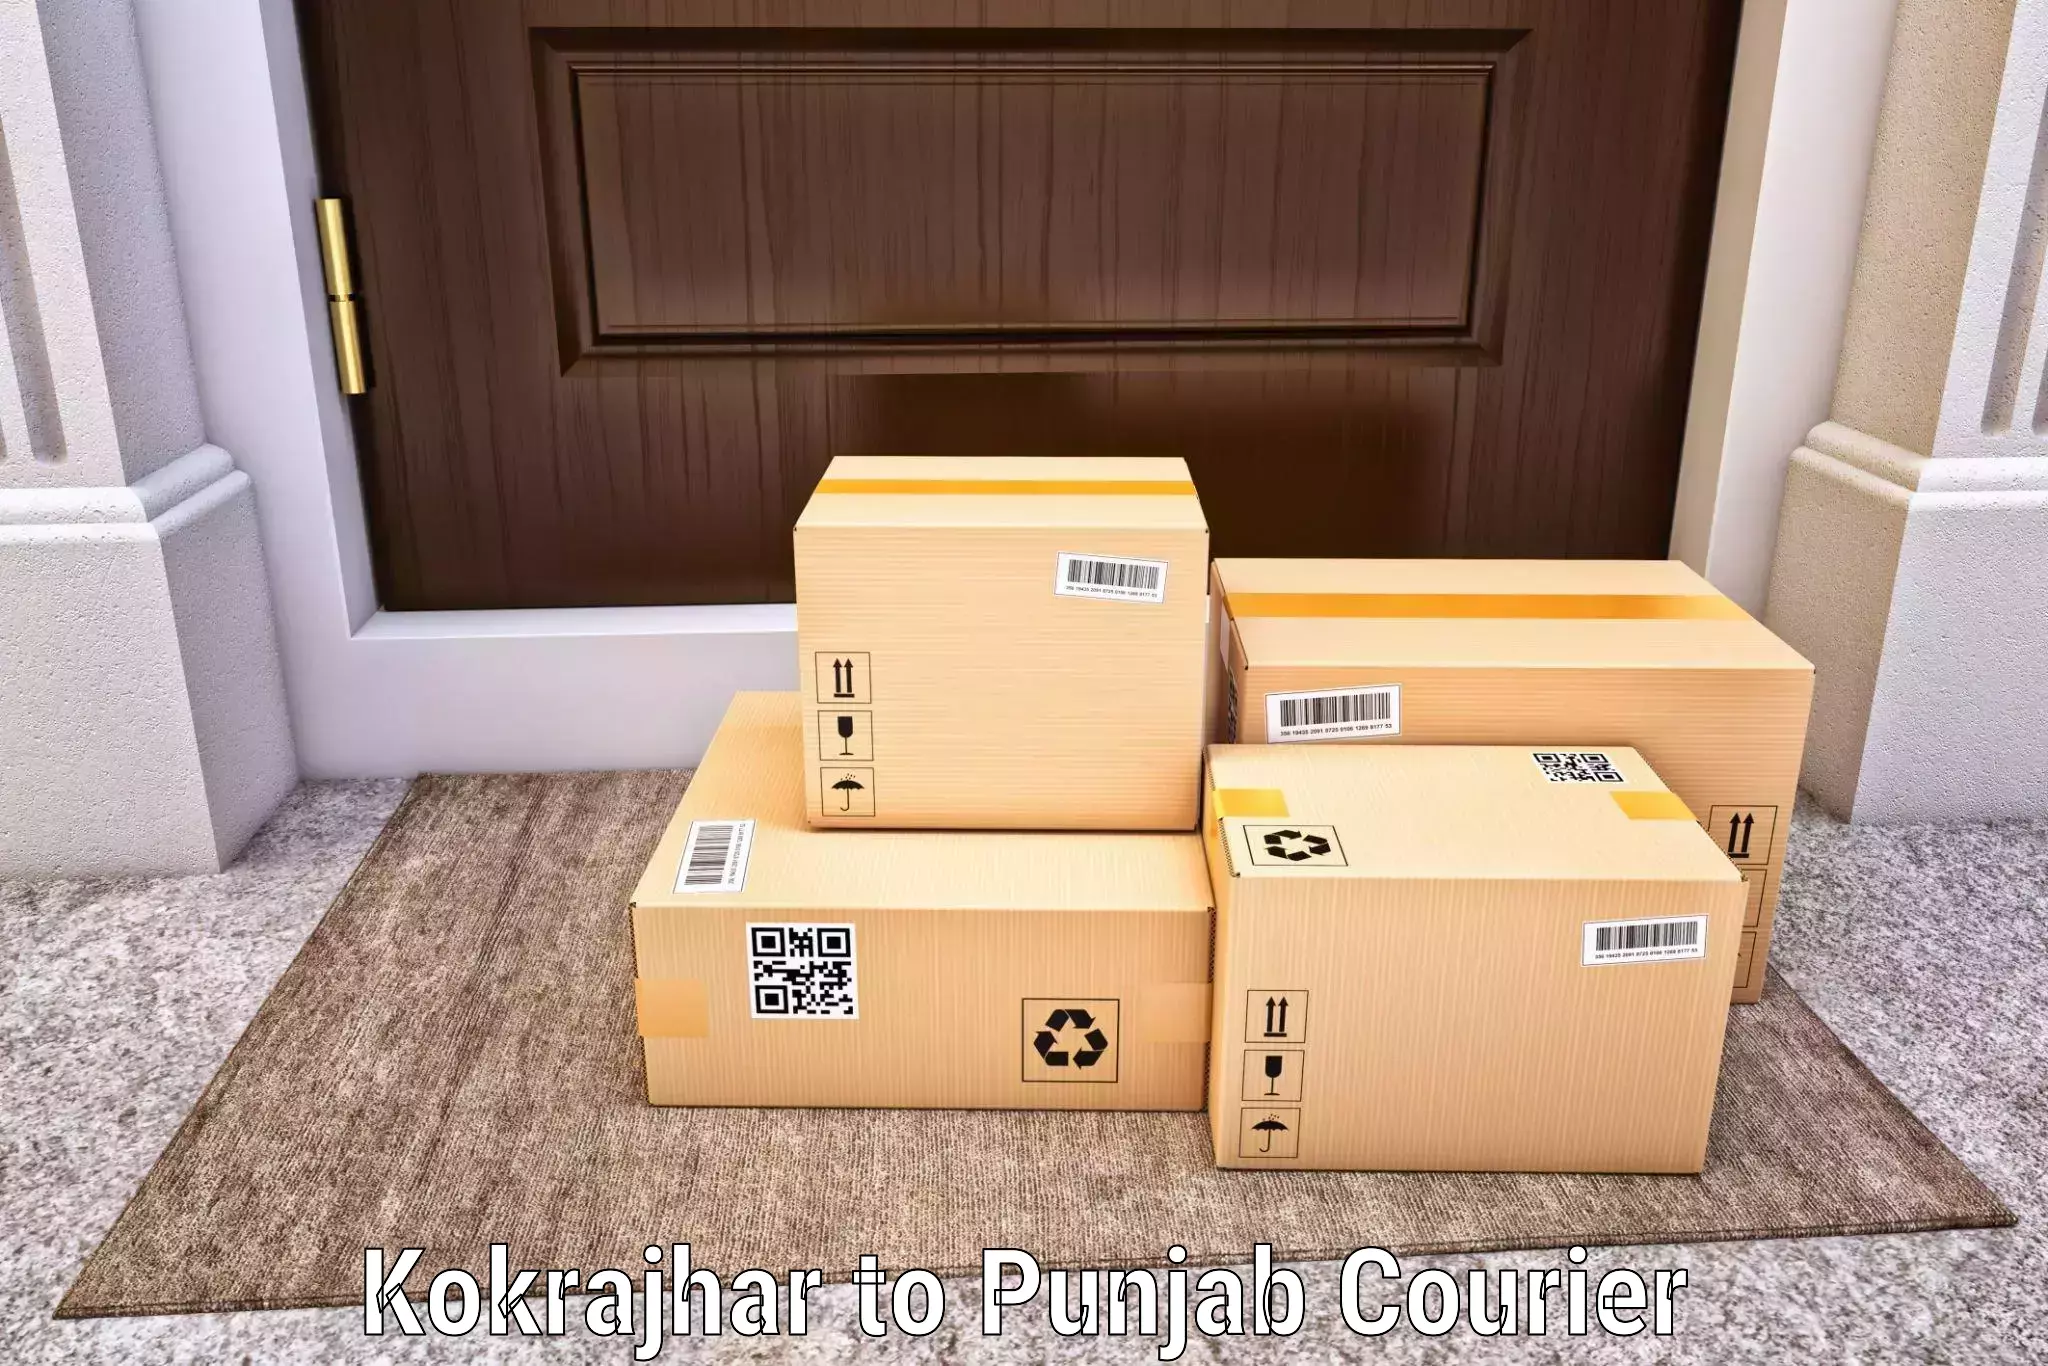 Round-the-clock parcel delivery Kokrajhar to Abohar